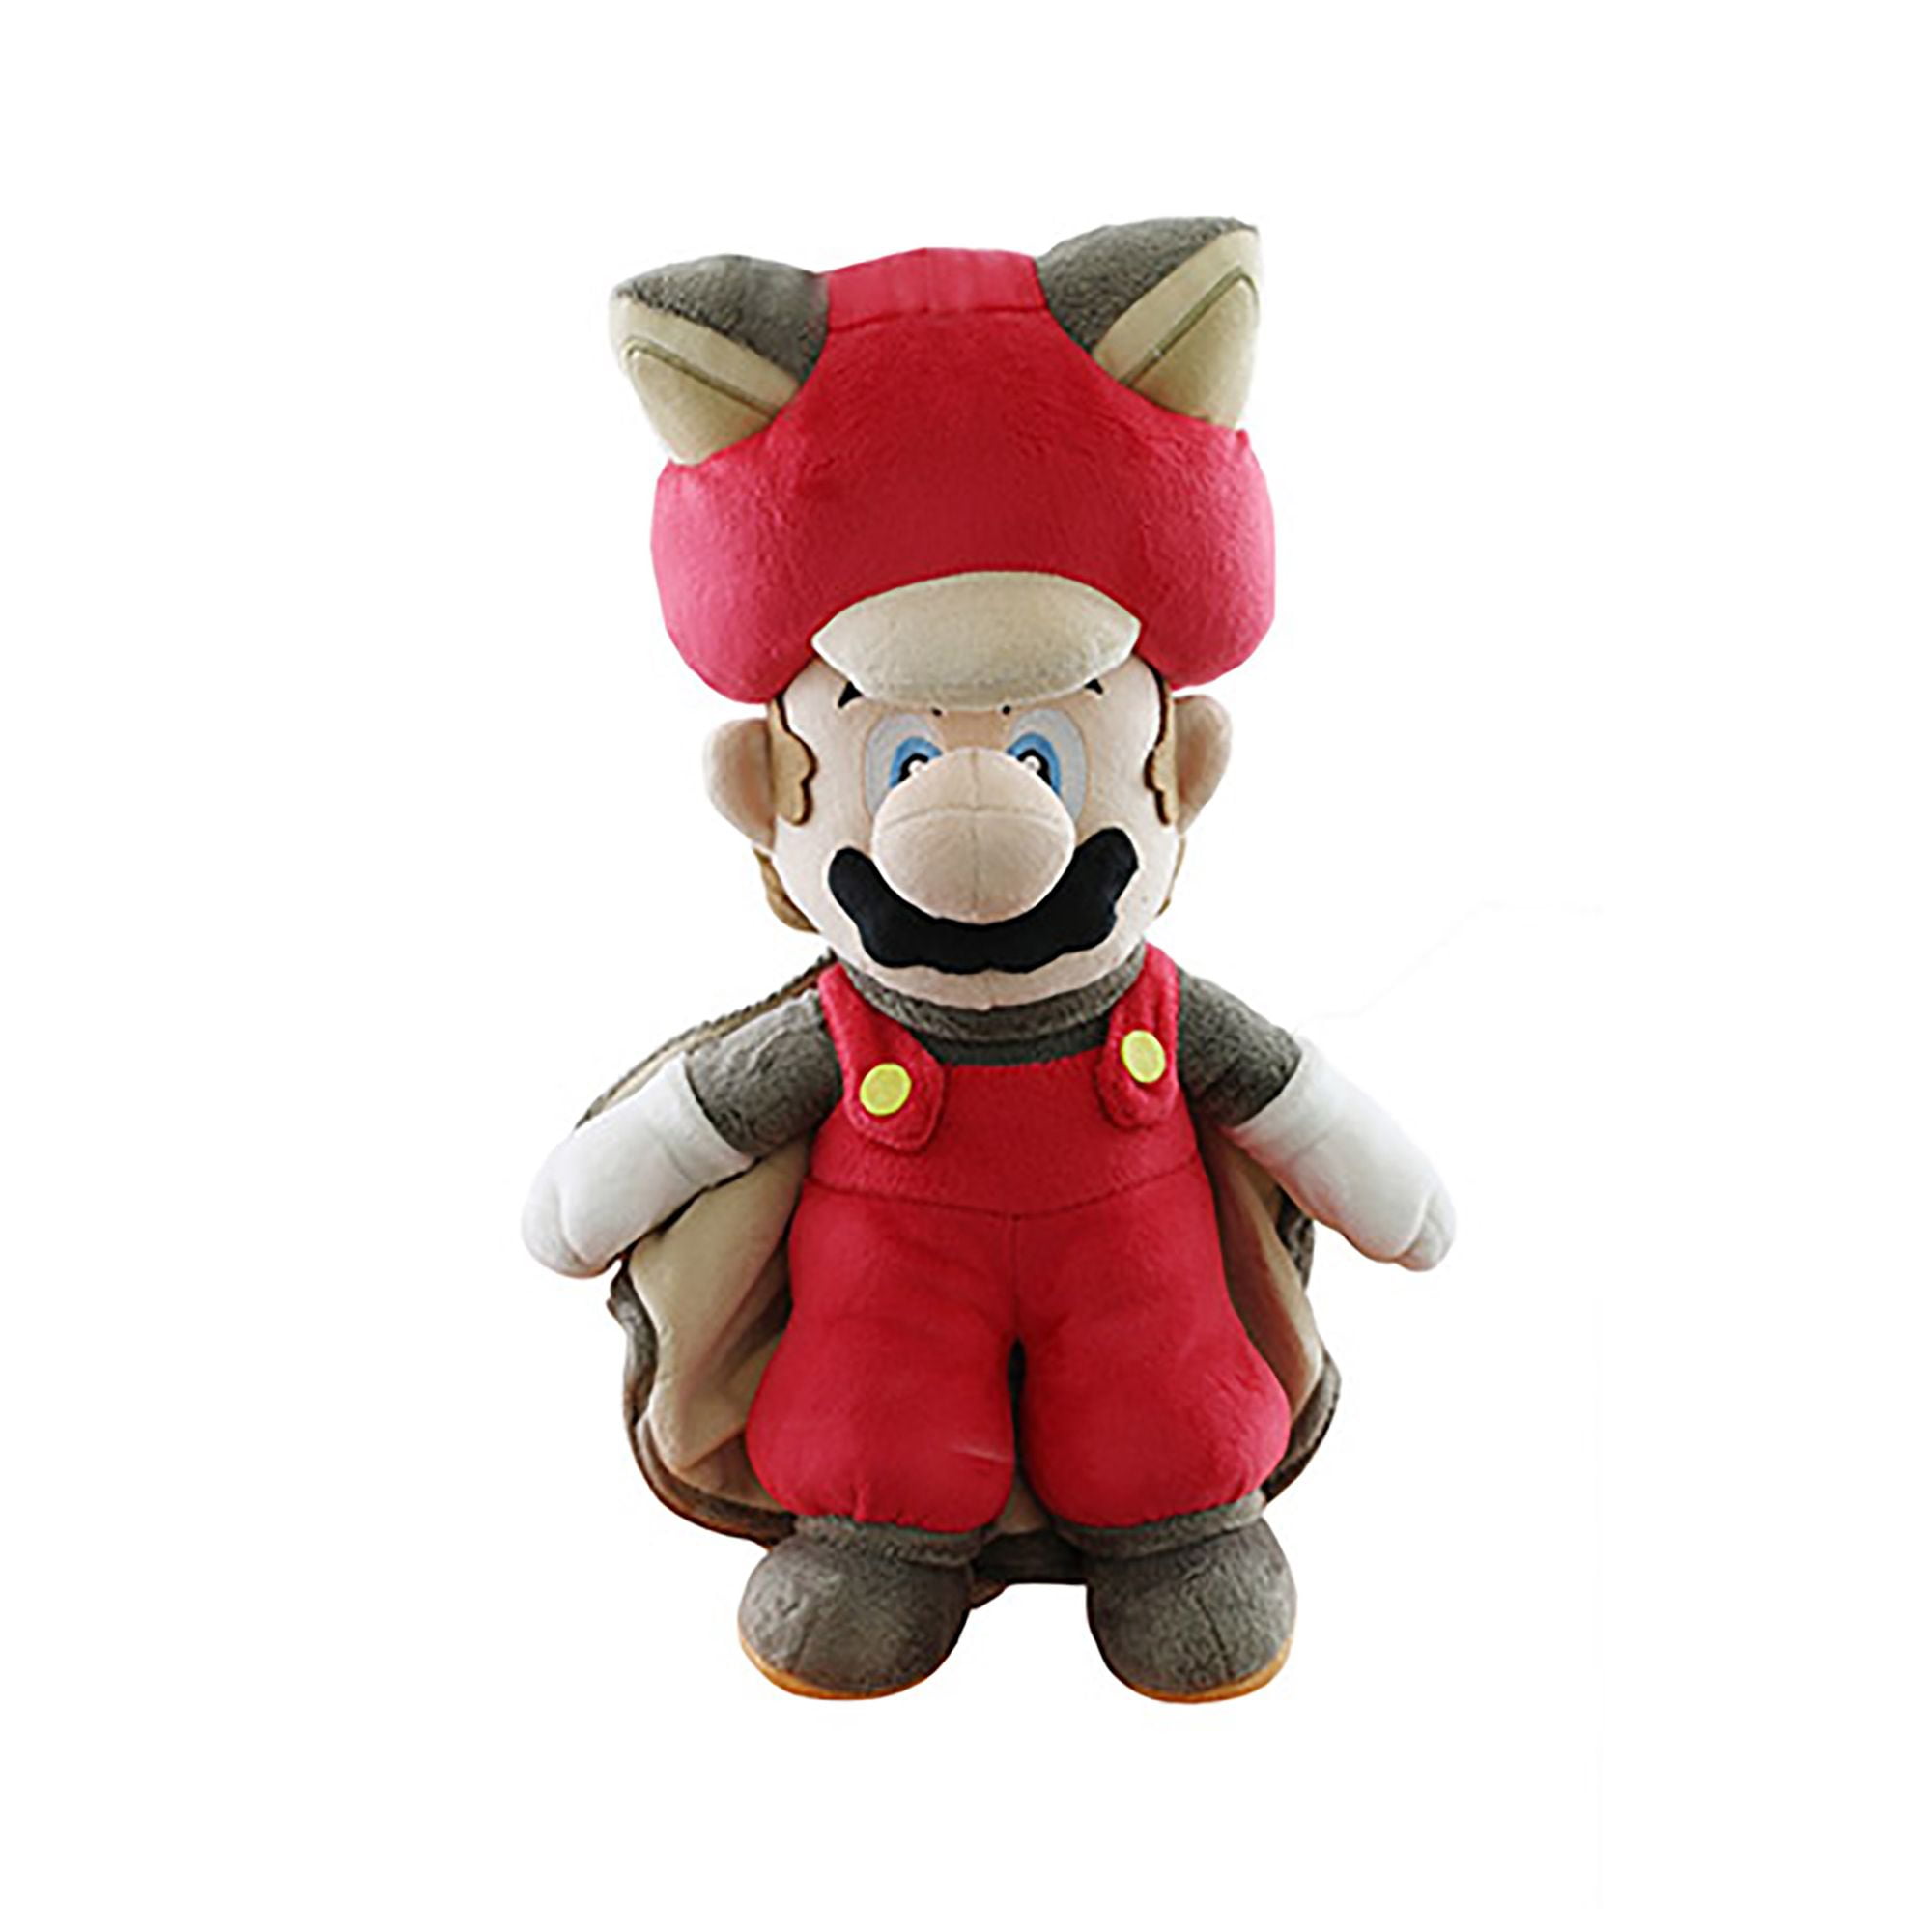 2X Super Mario Bros Cat and Squirrel Form Luigi Stuffed Animal Soft Plush Toy 9" 